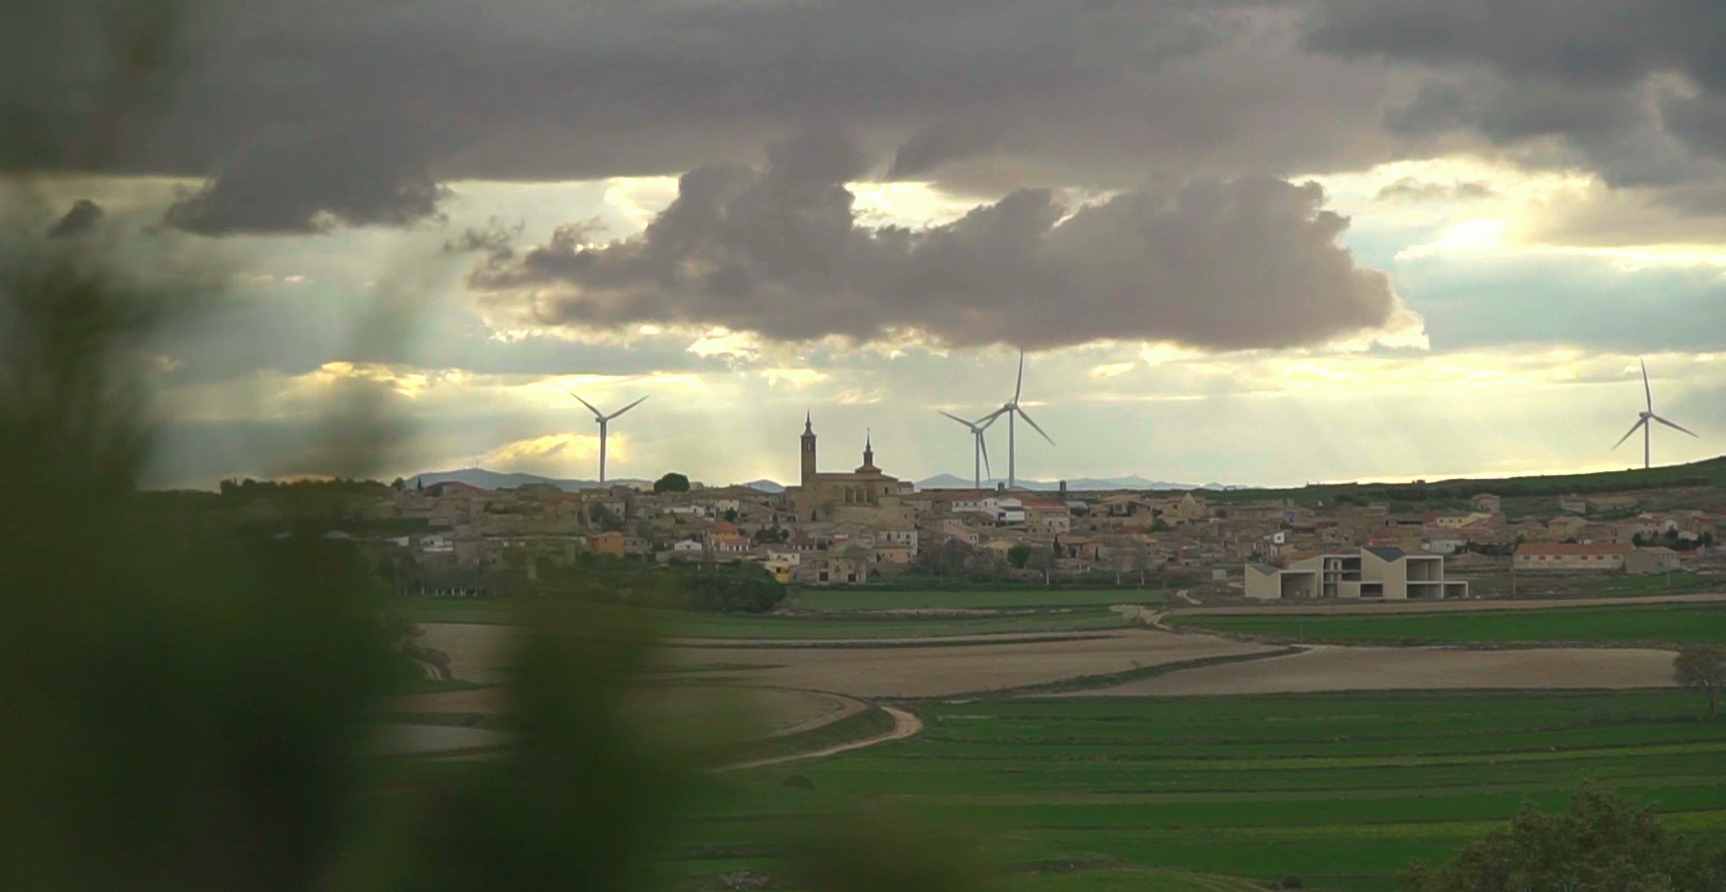 Endesa va a invertir 25 millones de euros en la construcción de un parque eólico en Fuendetodos, la localidad que vio nacer a Goya de apenas 150 habitantes y ubicada en la comarca de Belchite, una de las áreas más despobladas de Aragón